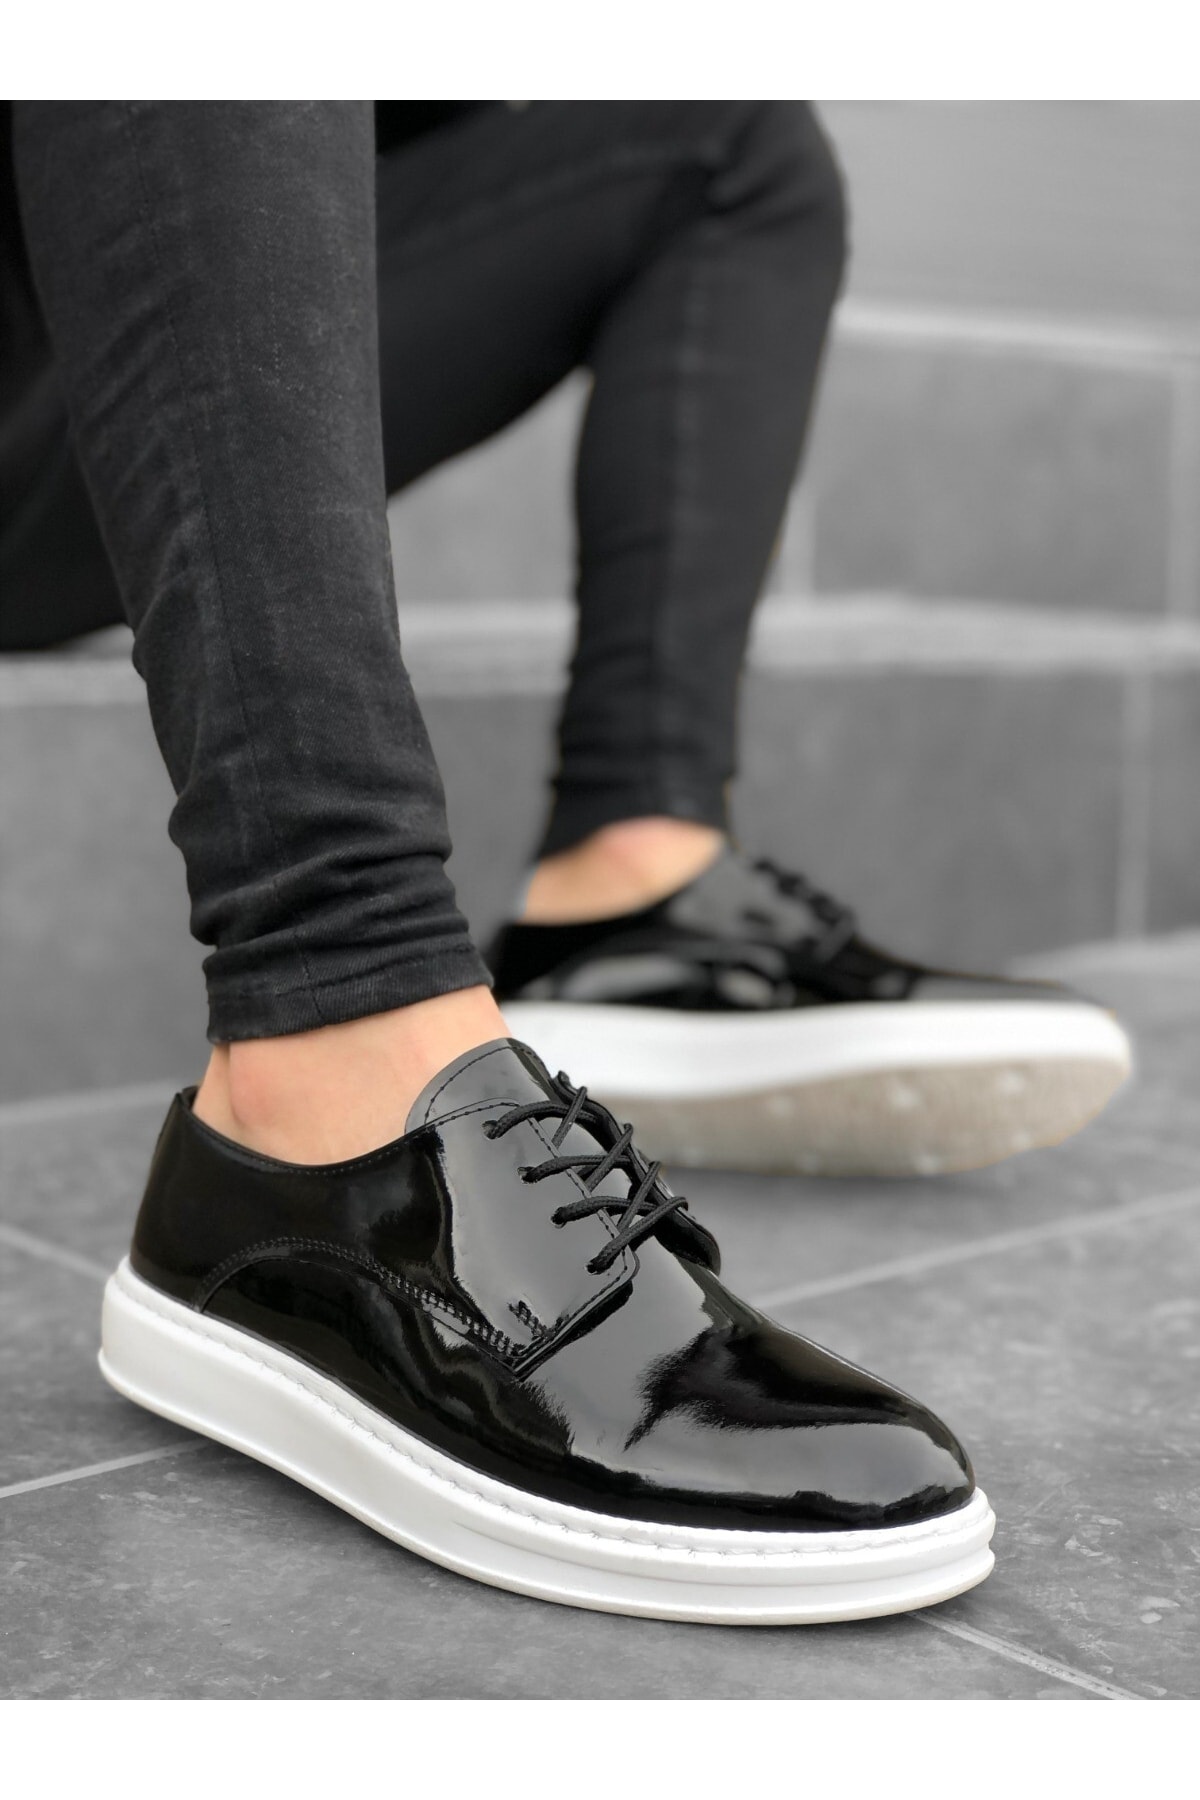 BOA Bağcıklı Süet Klasik Siyah Yüksek Taban Casual Erkek Ayakkabı